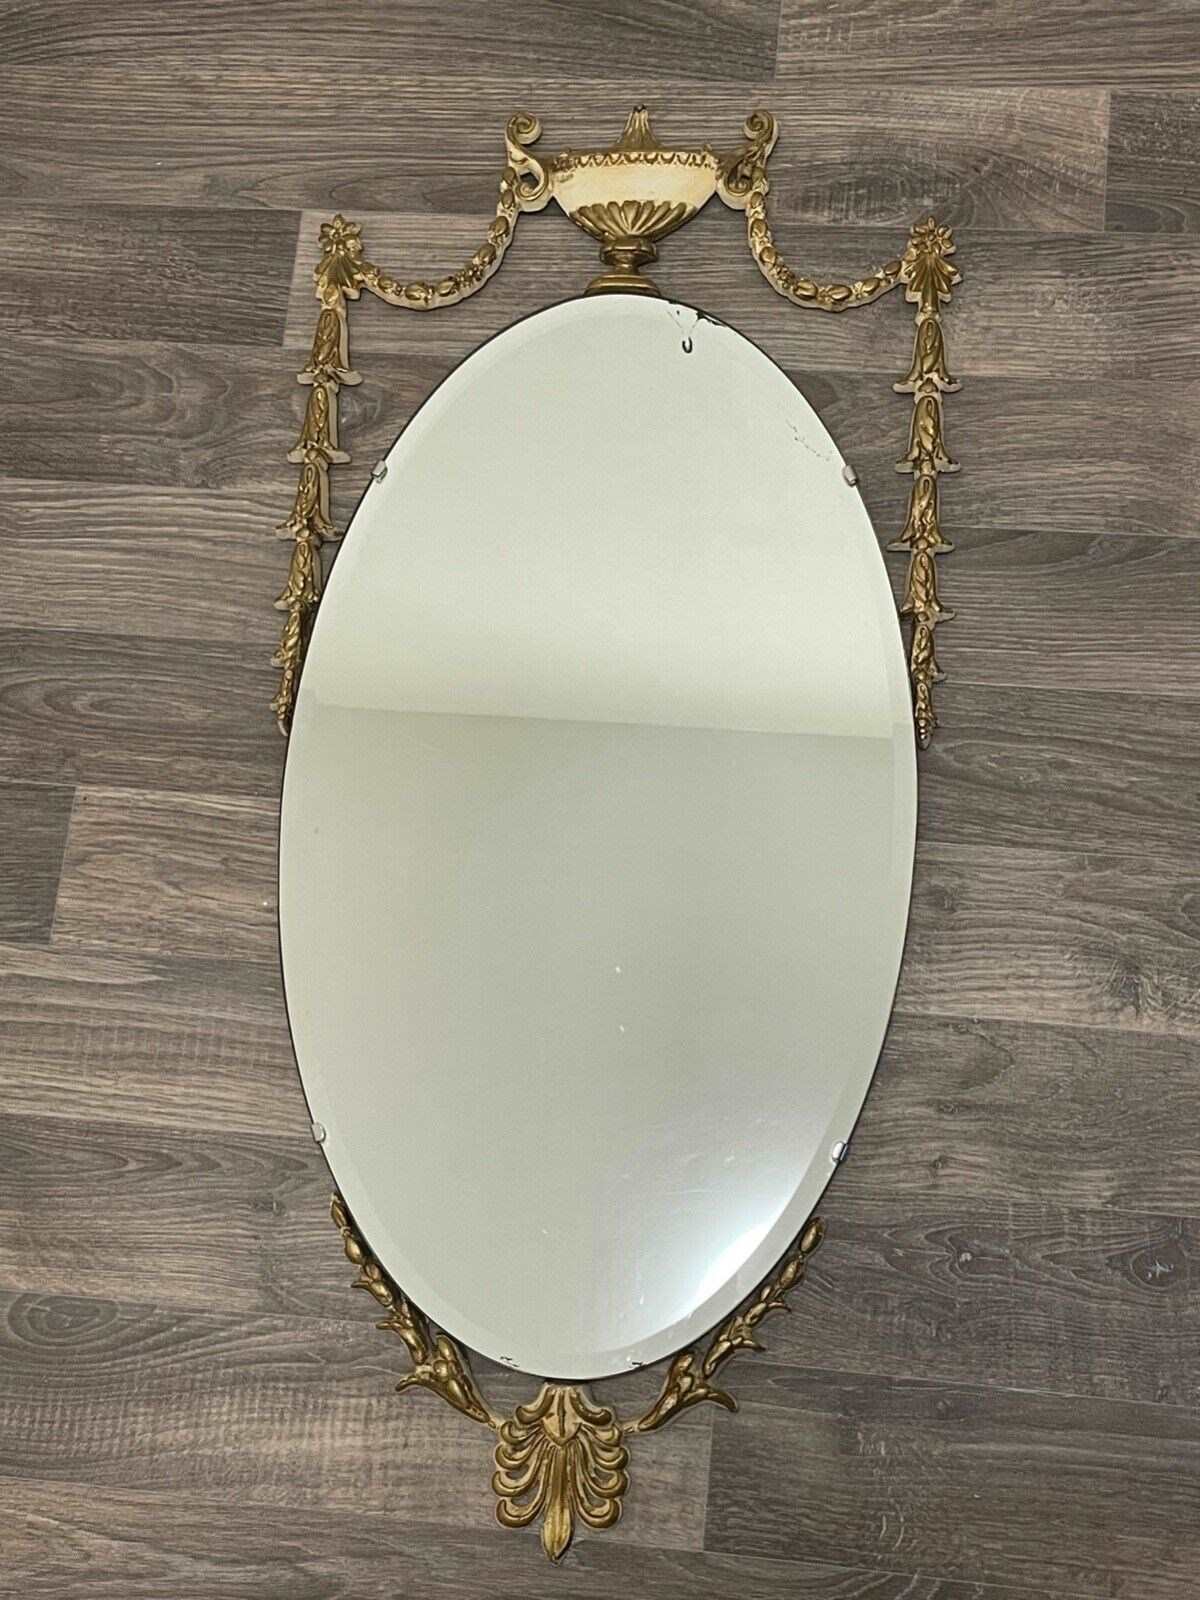 England - Silver mirror